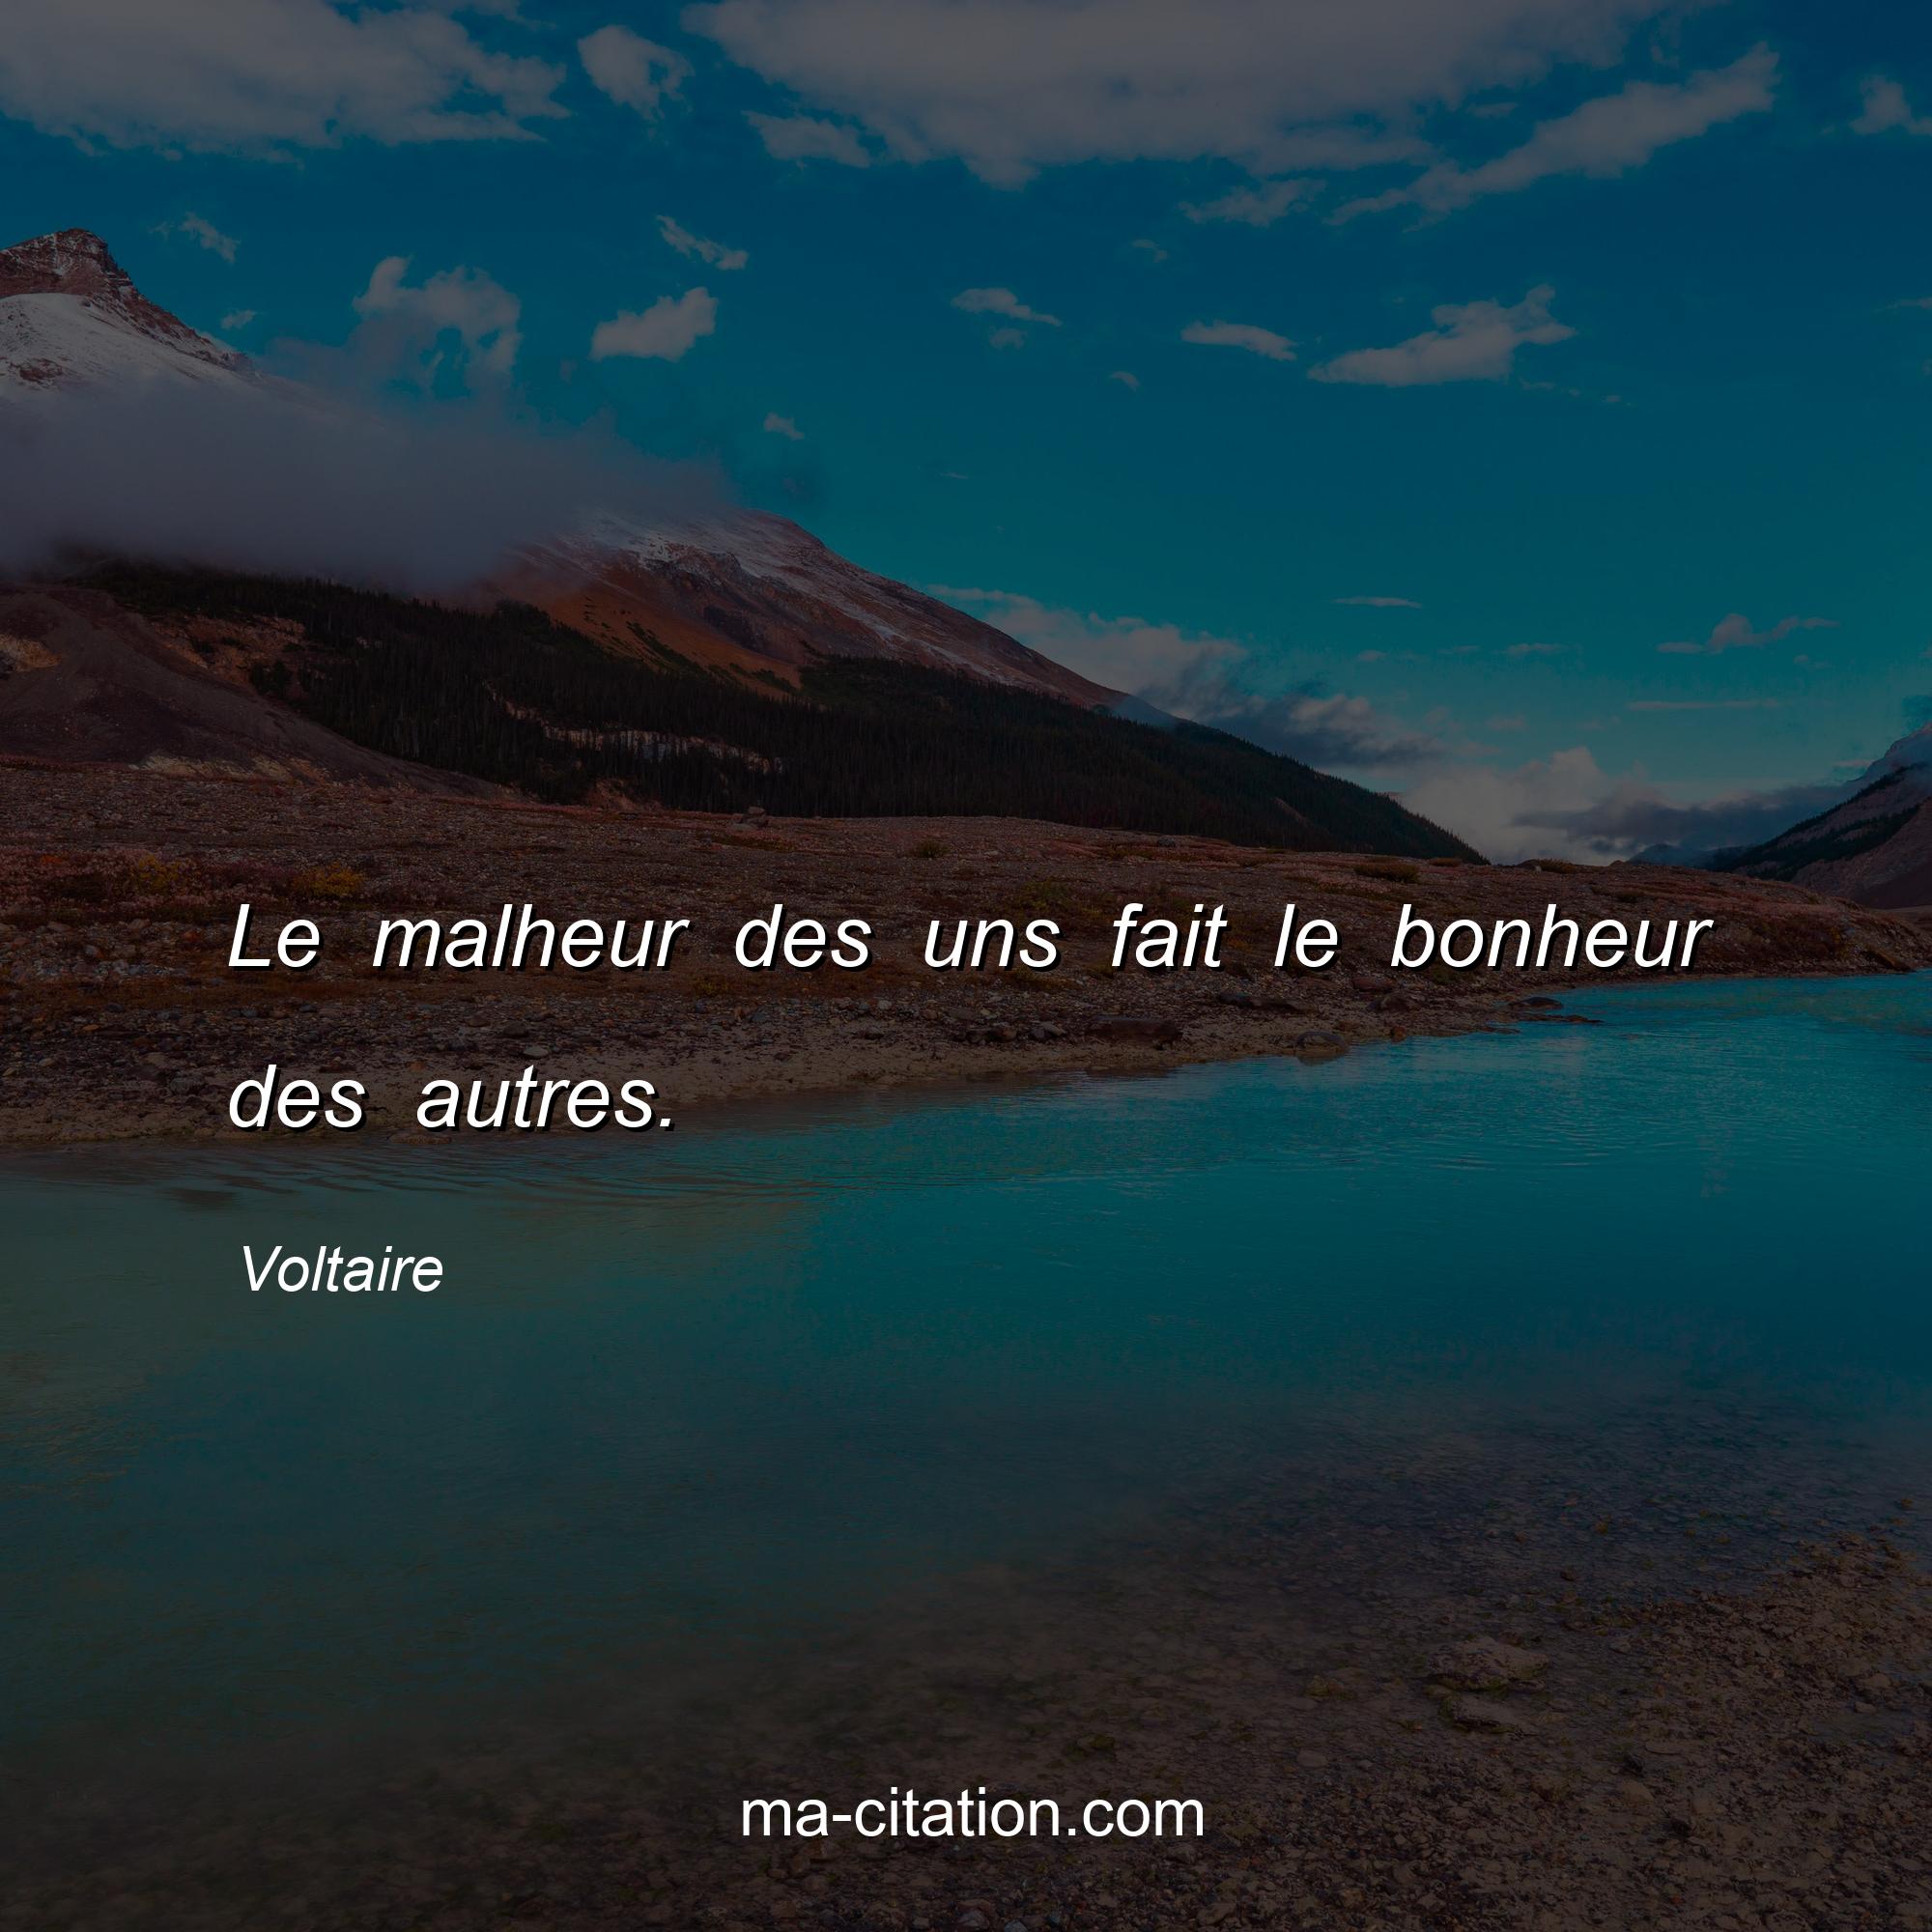 Voltaire : Le malheur des uns fait le bonheur des autres.